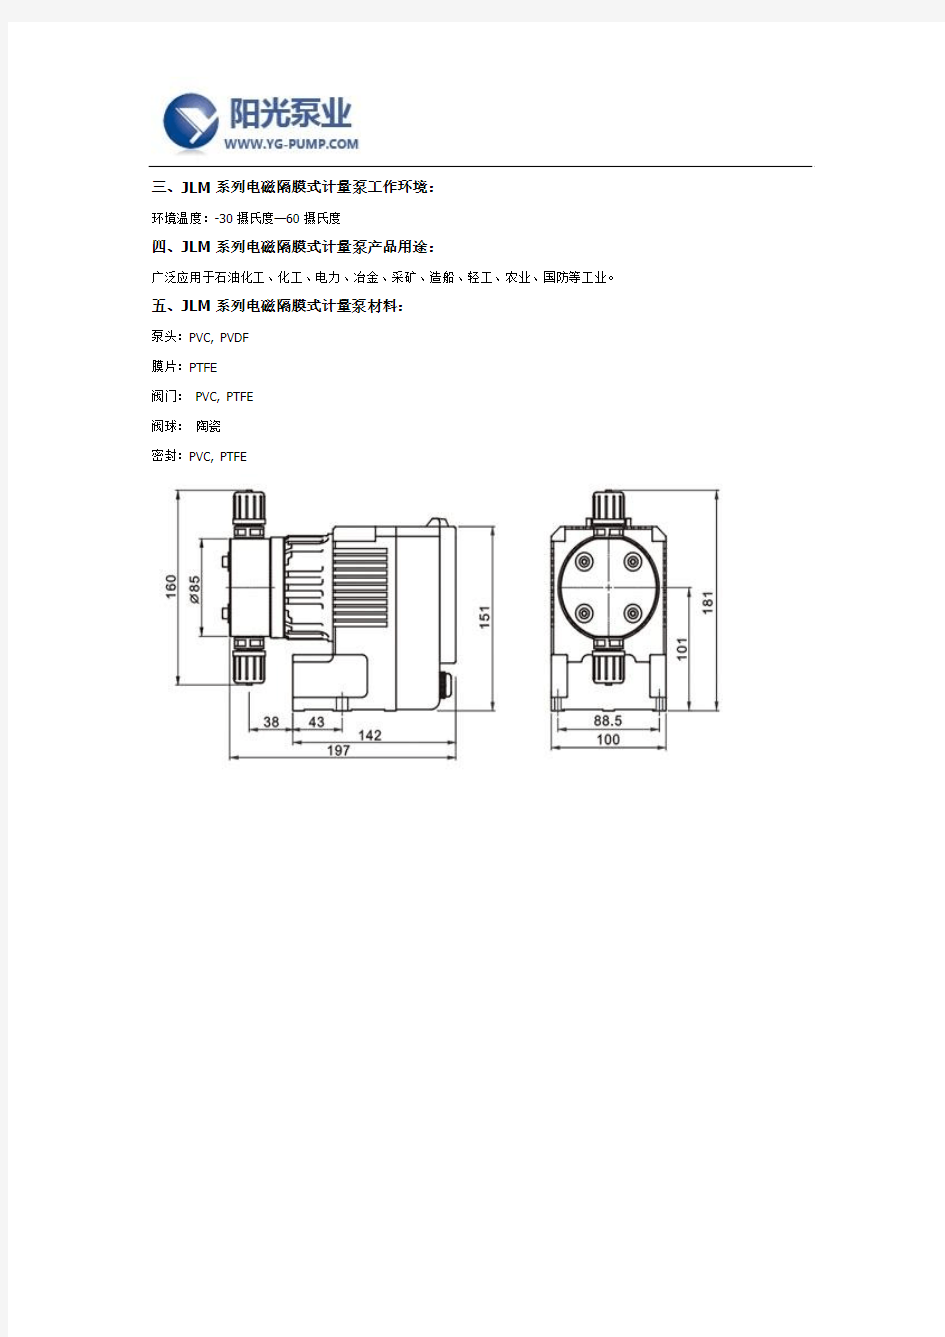 JLM系列电磁隔膜式计量泵产品说明及特点